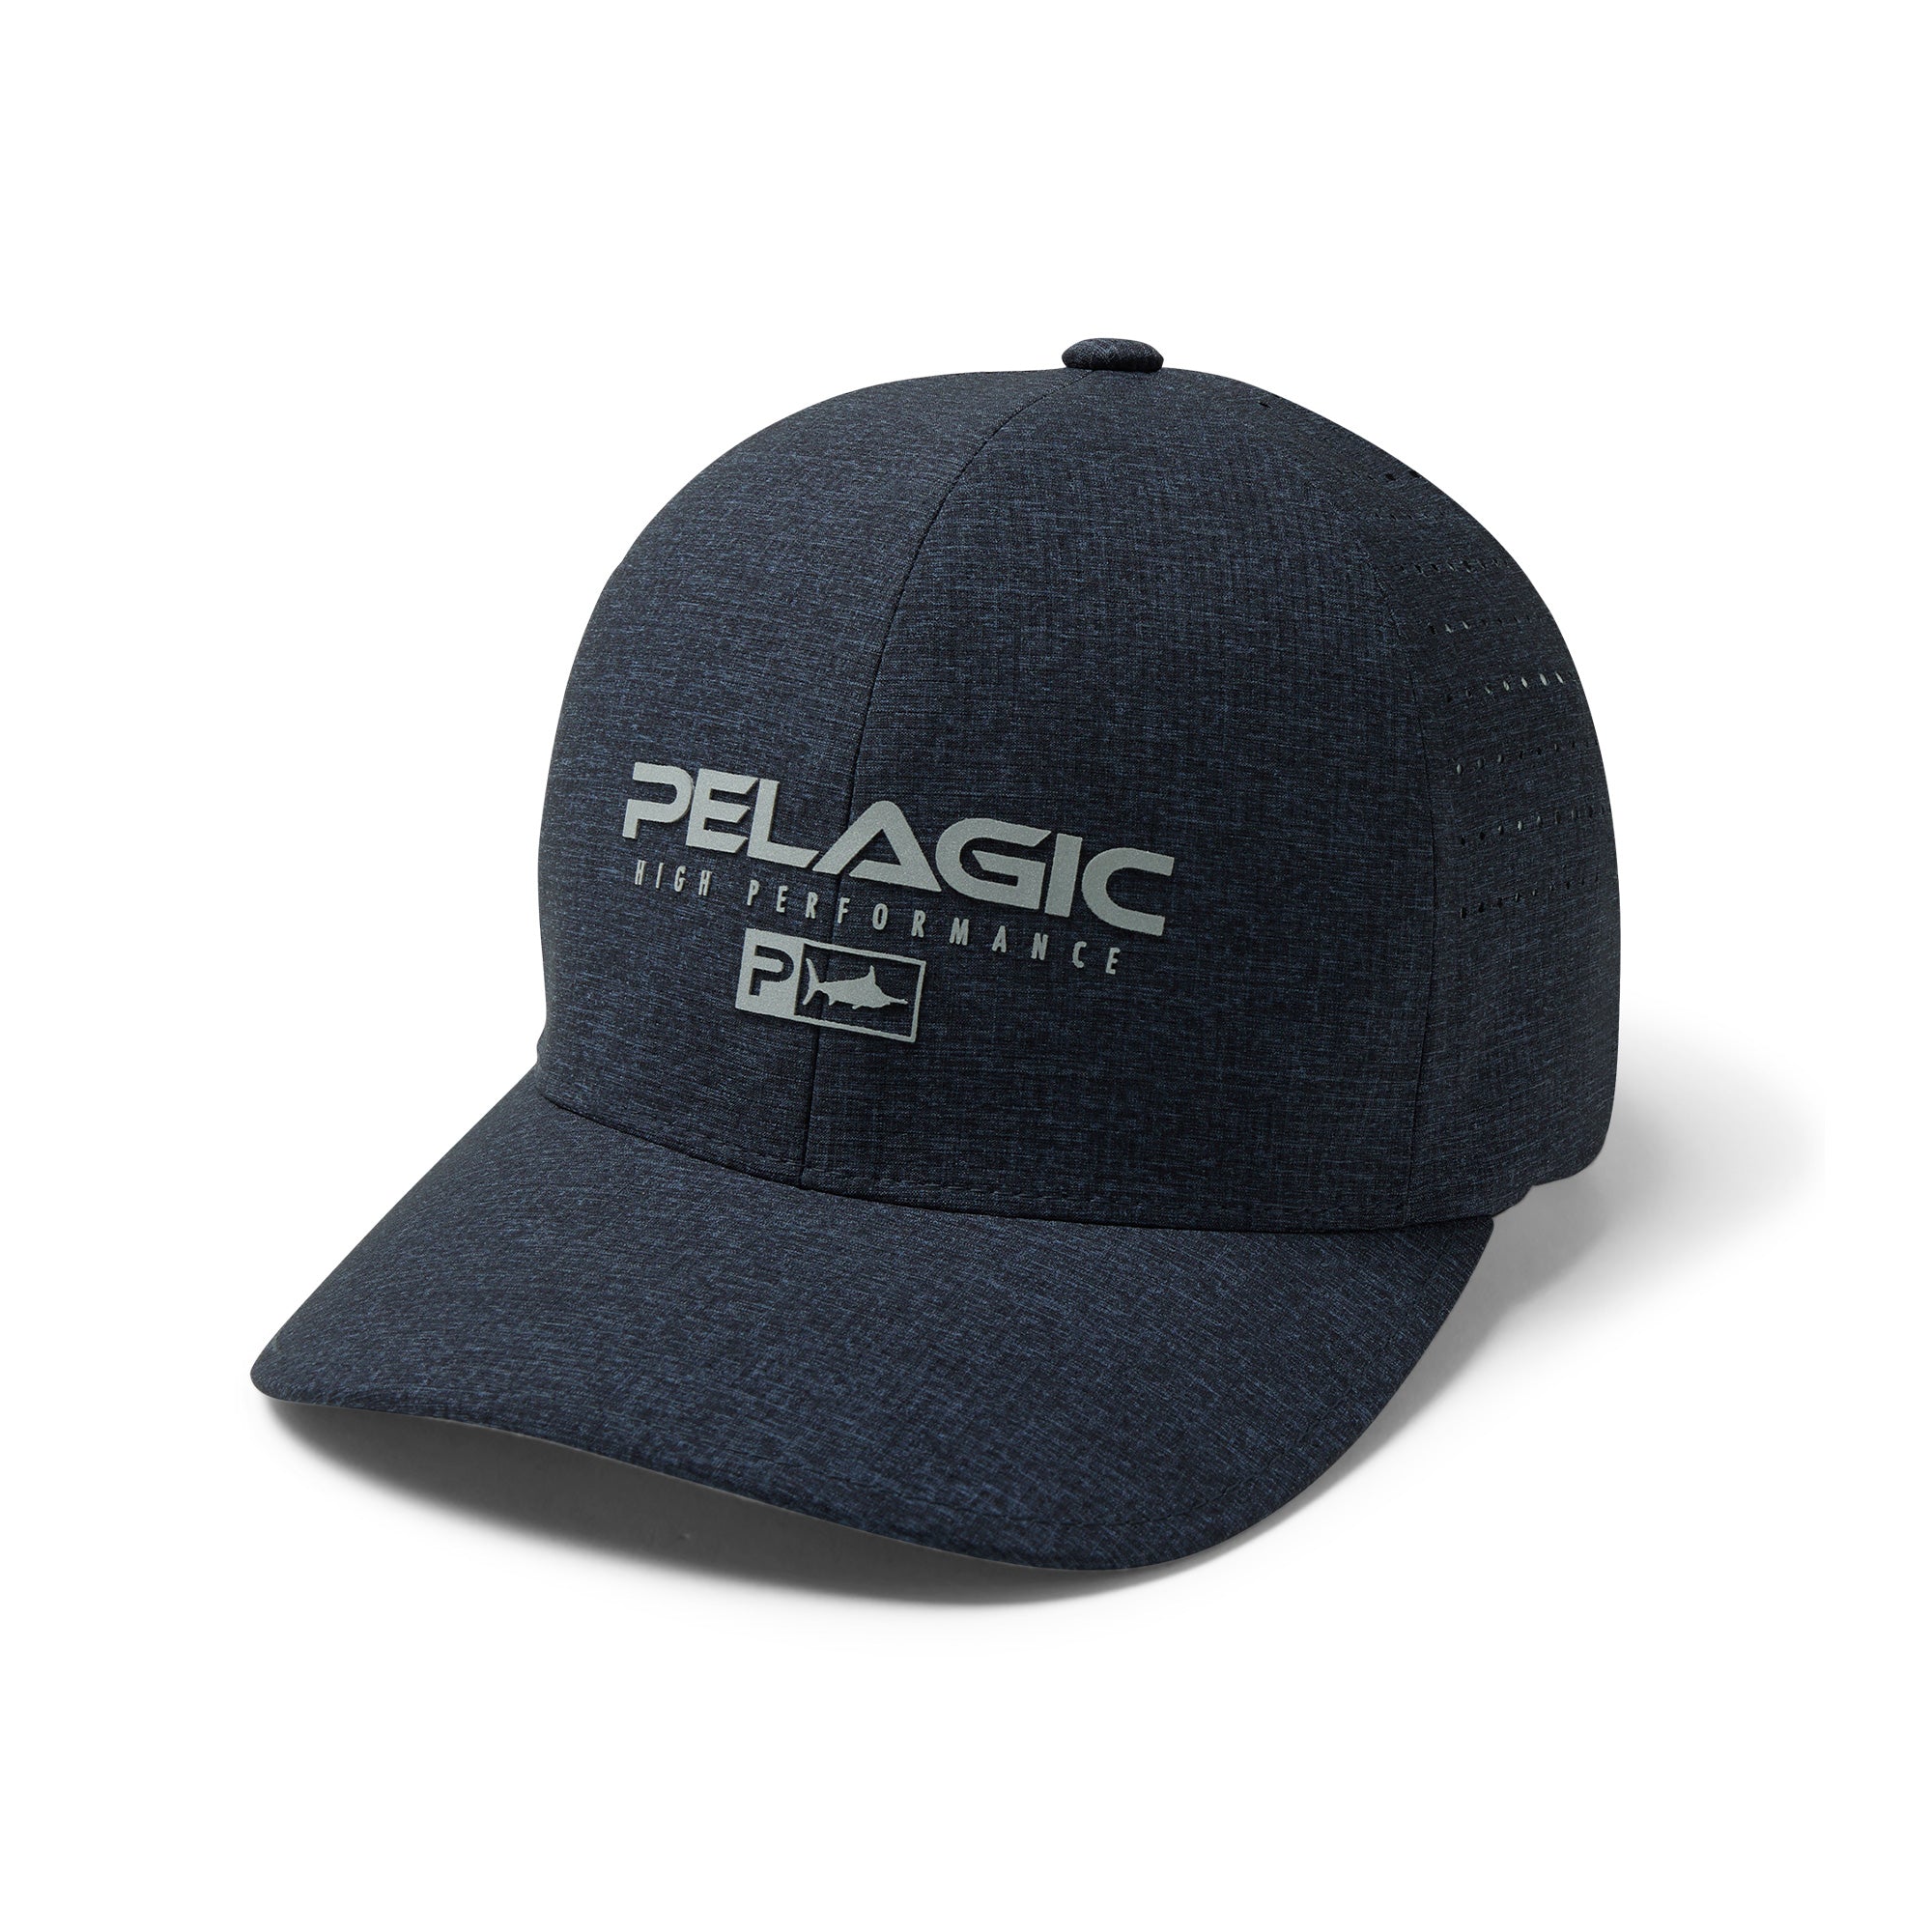 Pelagic Gear Trucker Hat Stuart Florida Snapback Fishing Cap - Needs Shaping